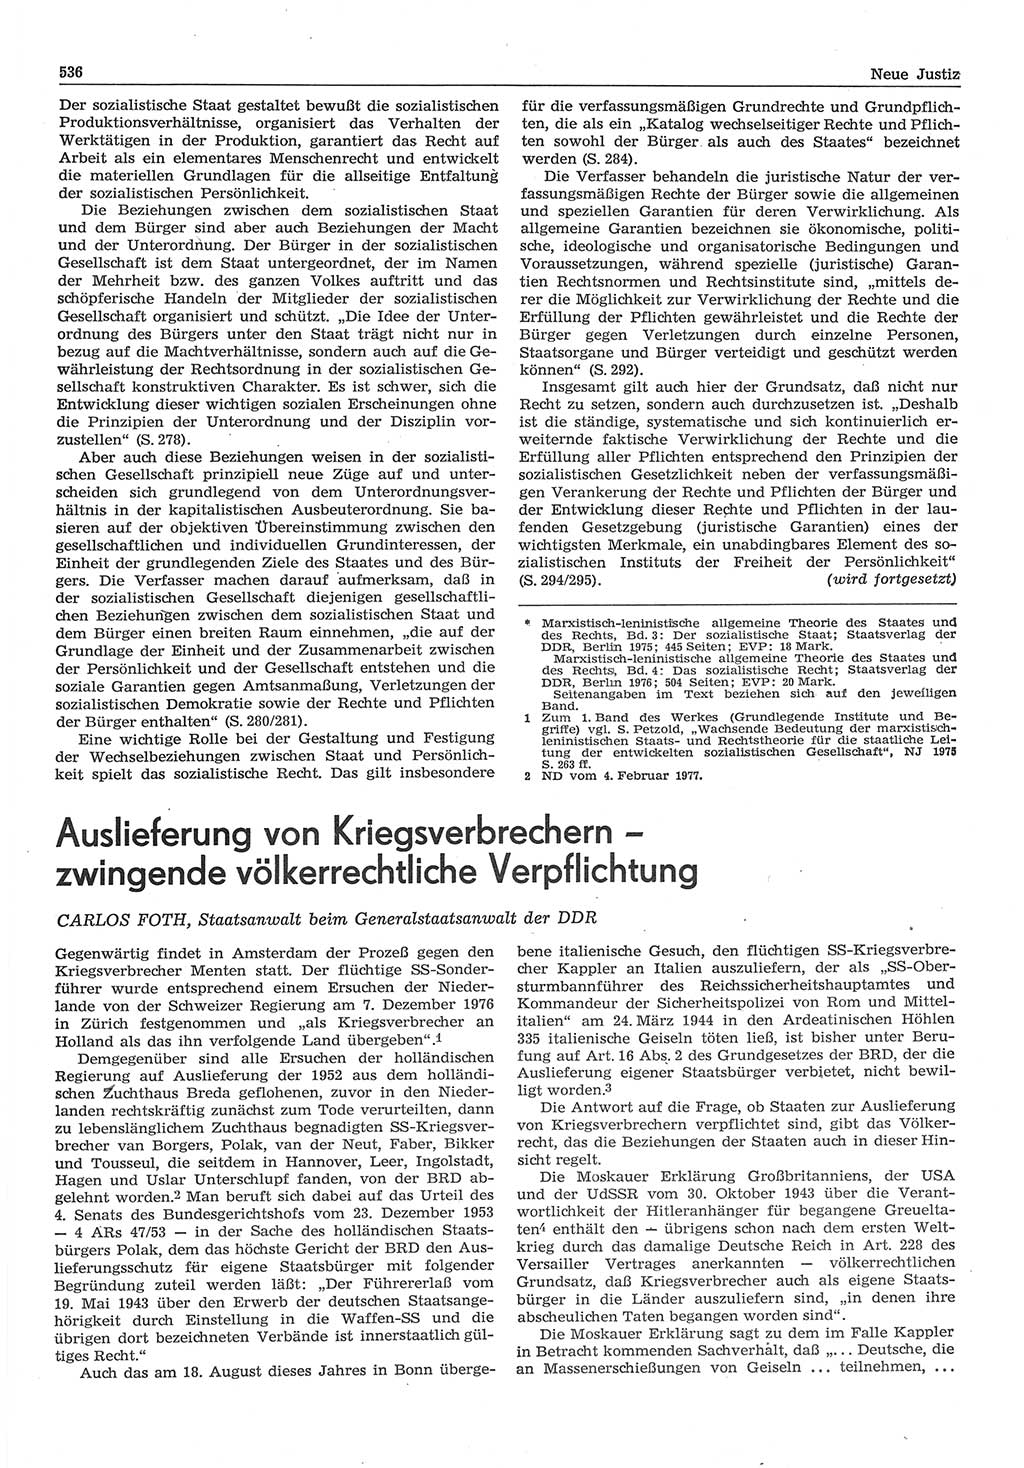 Neue Justiz (NJ), Zeitschrift für Recht und Rechtswissenschaft-Zeitschrift, sozialistisches Recht und Gesetzlichkeit, 31. Jahrgang 1977, Seite 536 (NJ DDR 1977, S. 536)